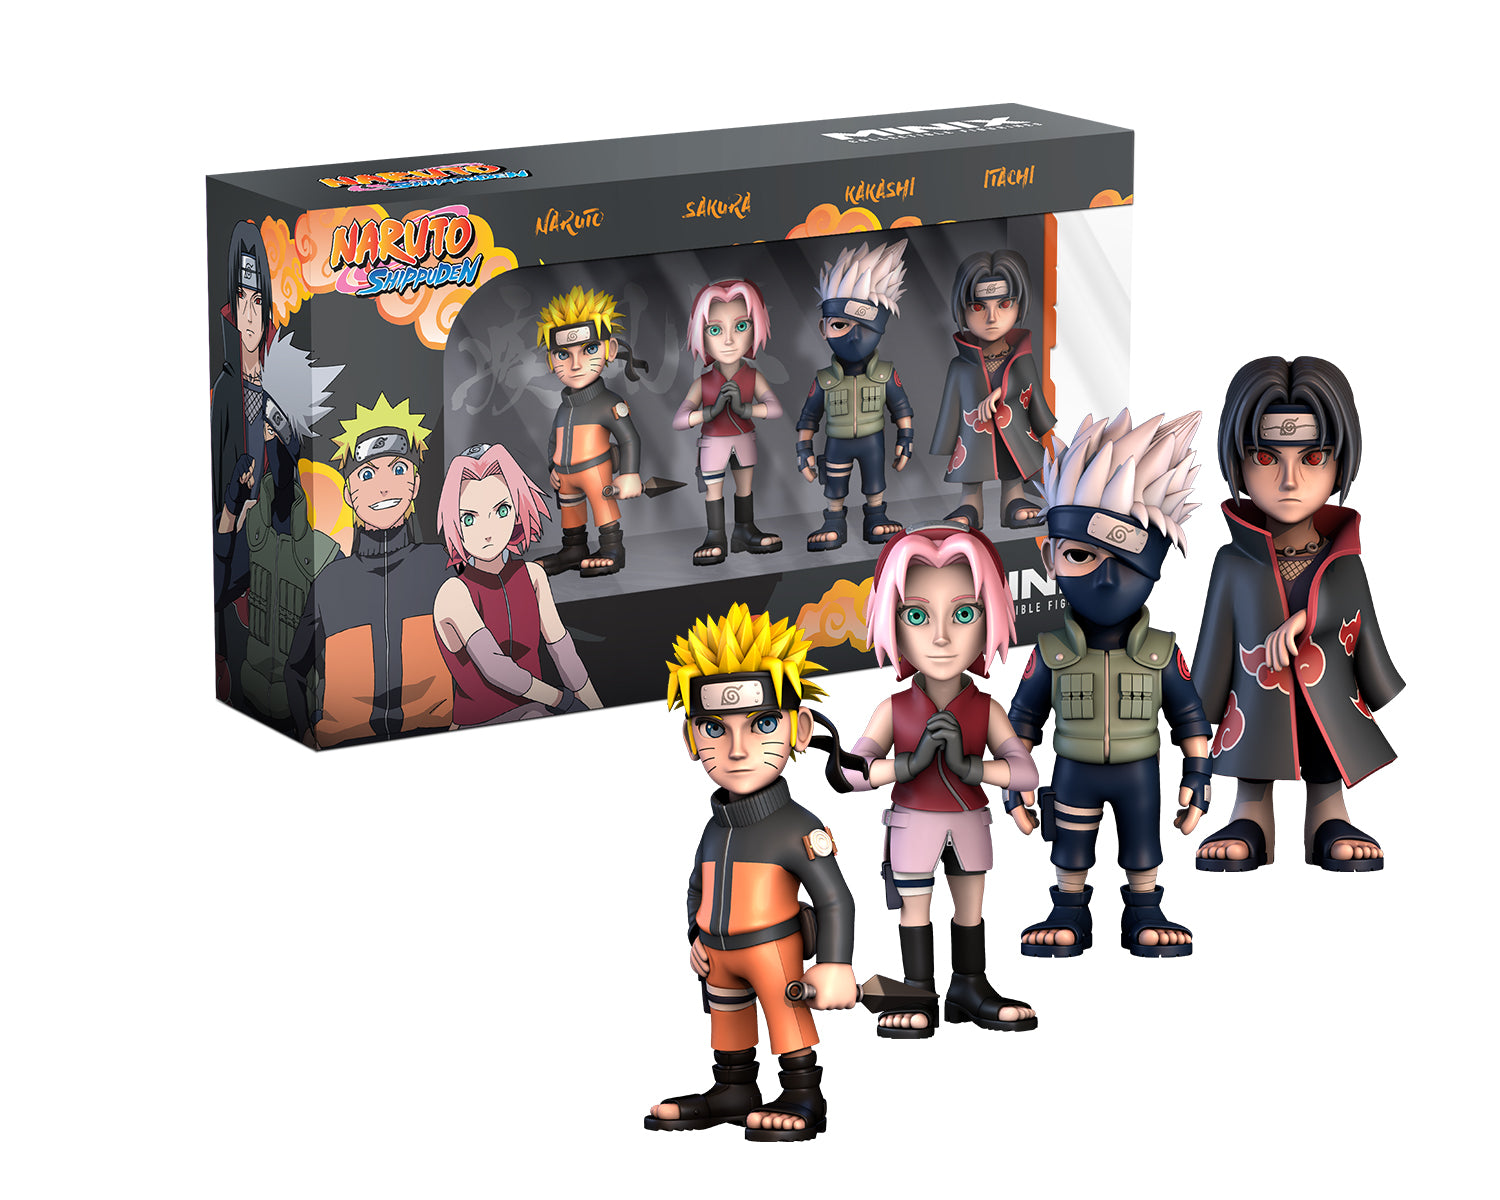 Minix -Animé -Naruto Shippuden -Pack de 4 Naruto Shippuden (Naruto, Kakashi, Itachi, Sakura) -Figurine -7 cm